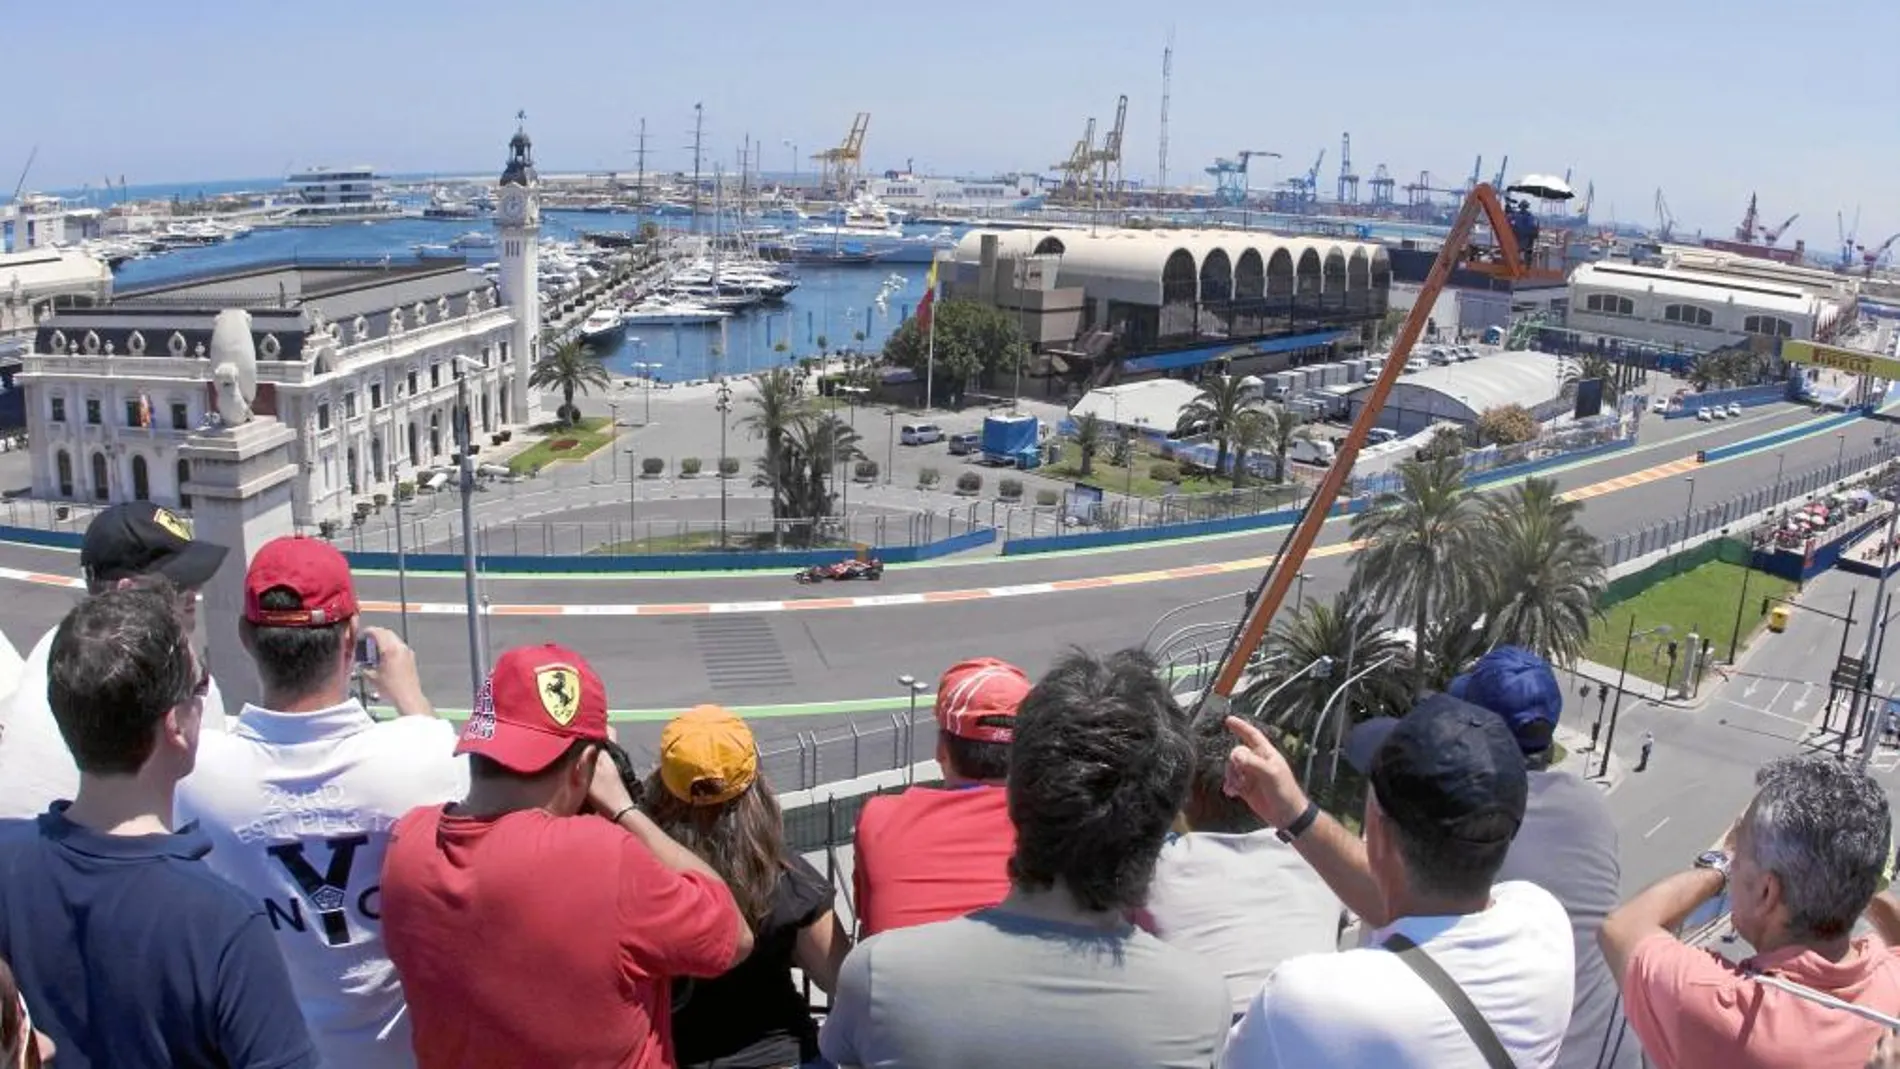 Valencia acogió durante cuatro años seguidos, de 2008 a 2012 el Gran Premio de Fórmula 1 de Europa. Los bólidos recorrieron la fachada marítima de la ciudad. Una de las «postales» más codiciadas de Valencia